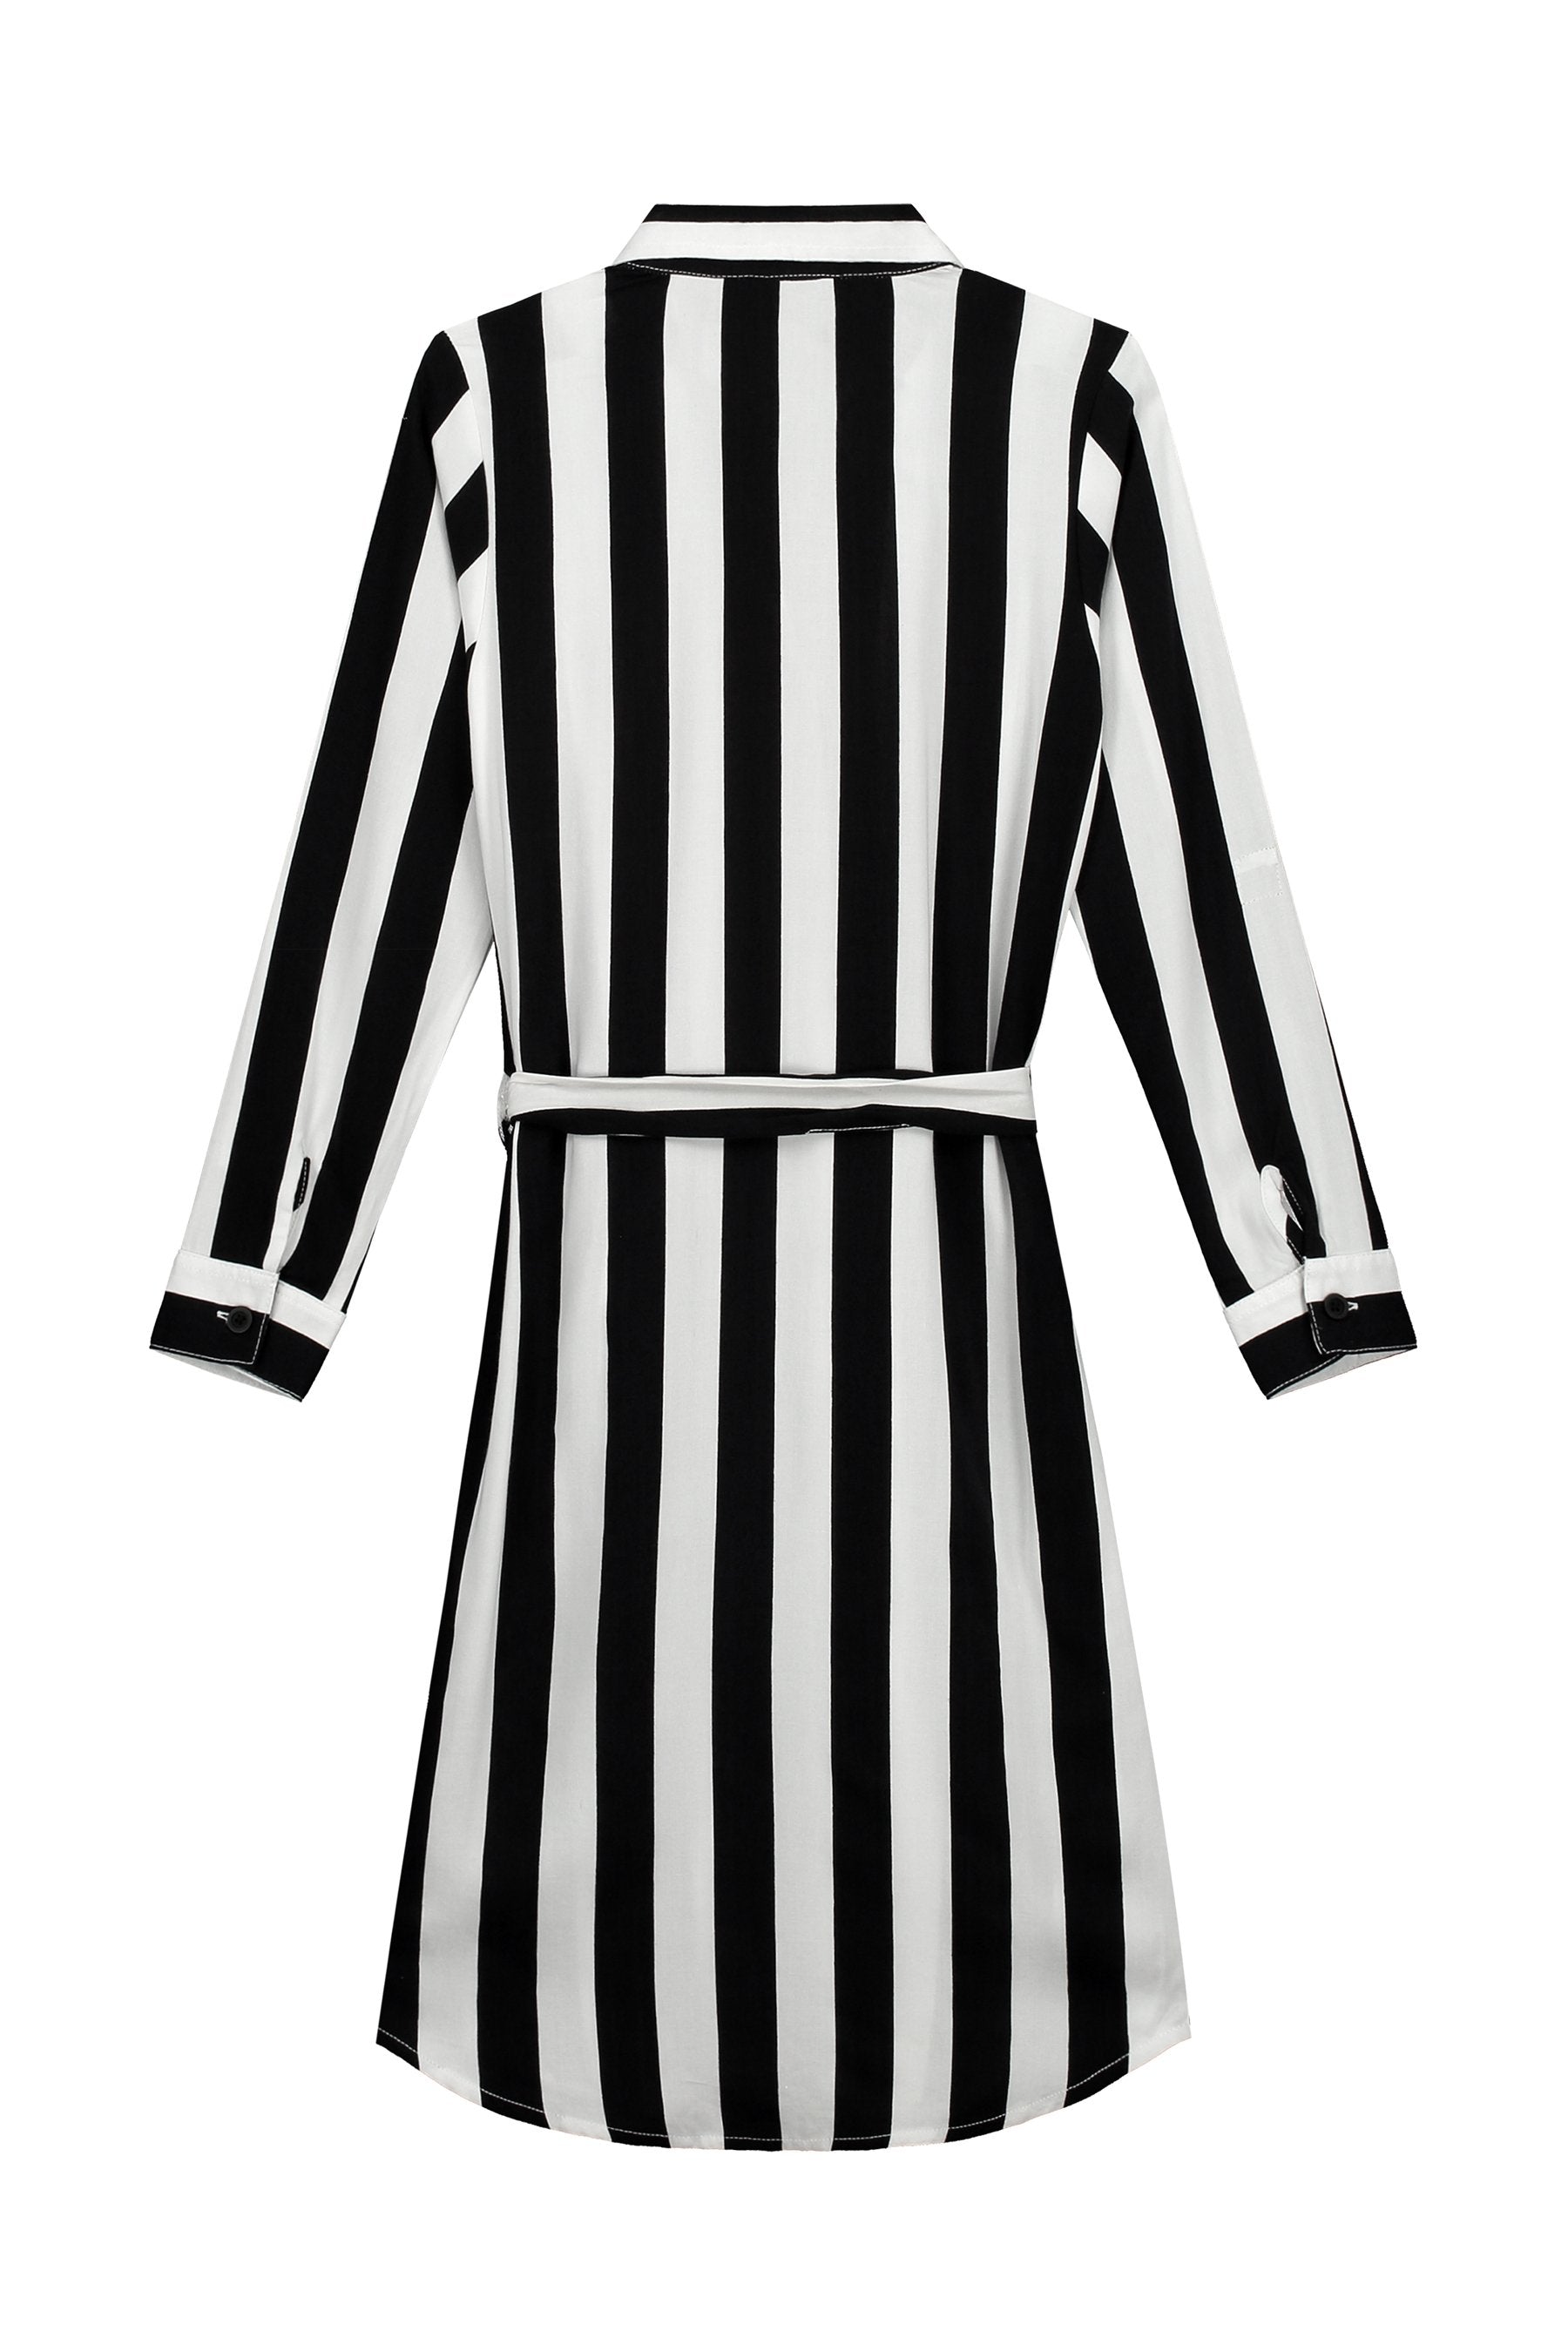 Meisjes Dress van Levv in de kleur Black White Stripe in maat 176.